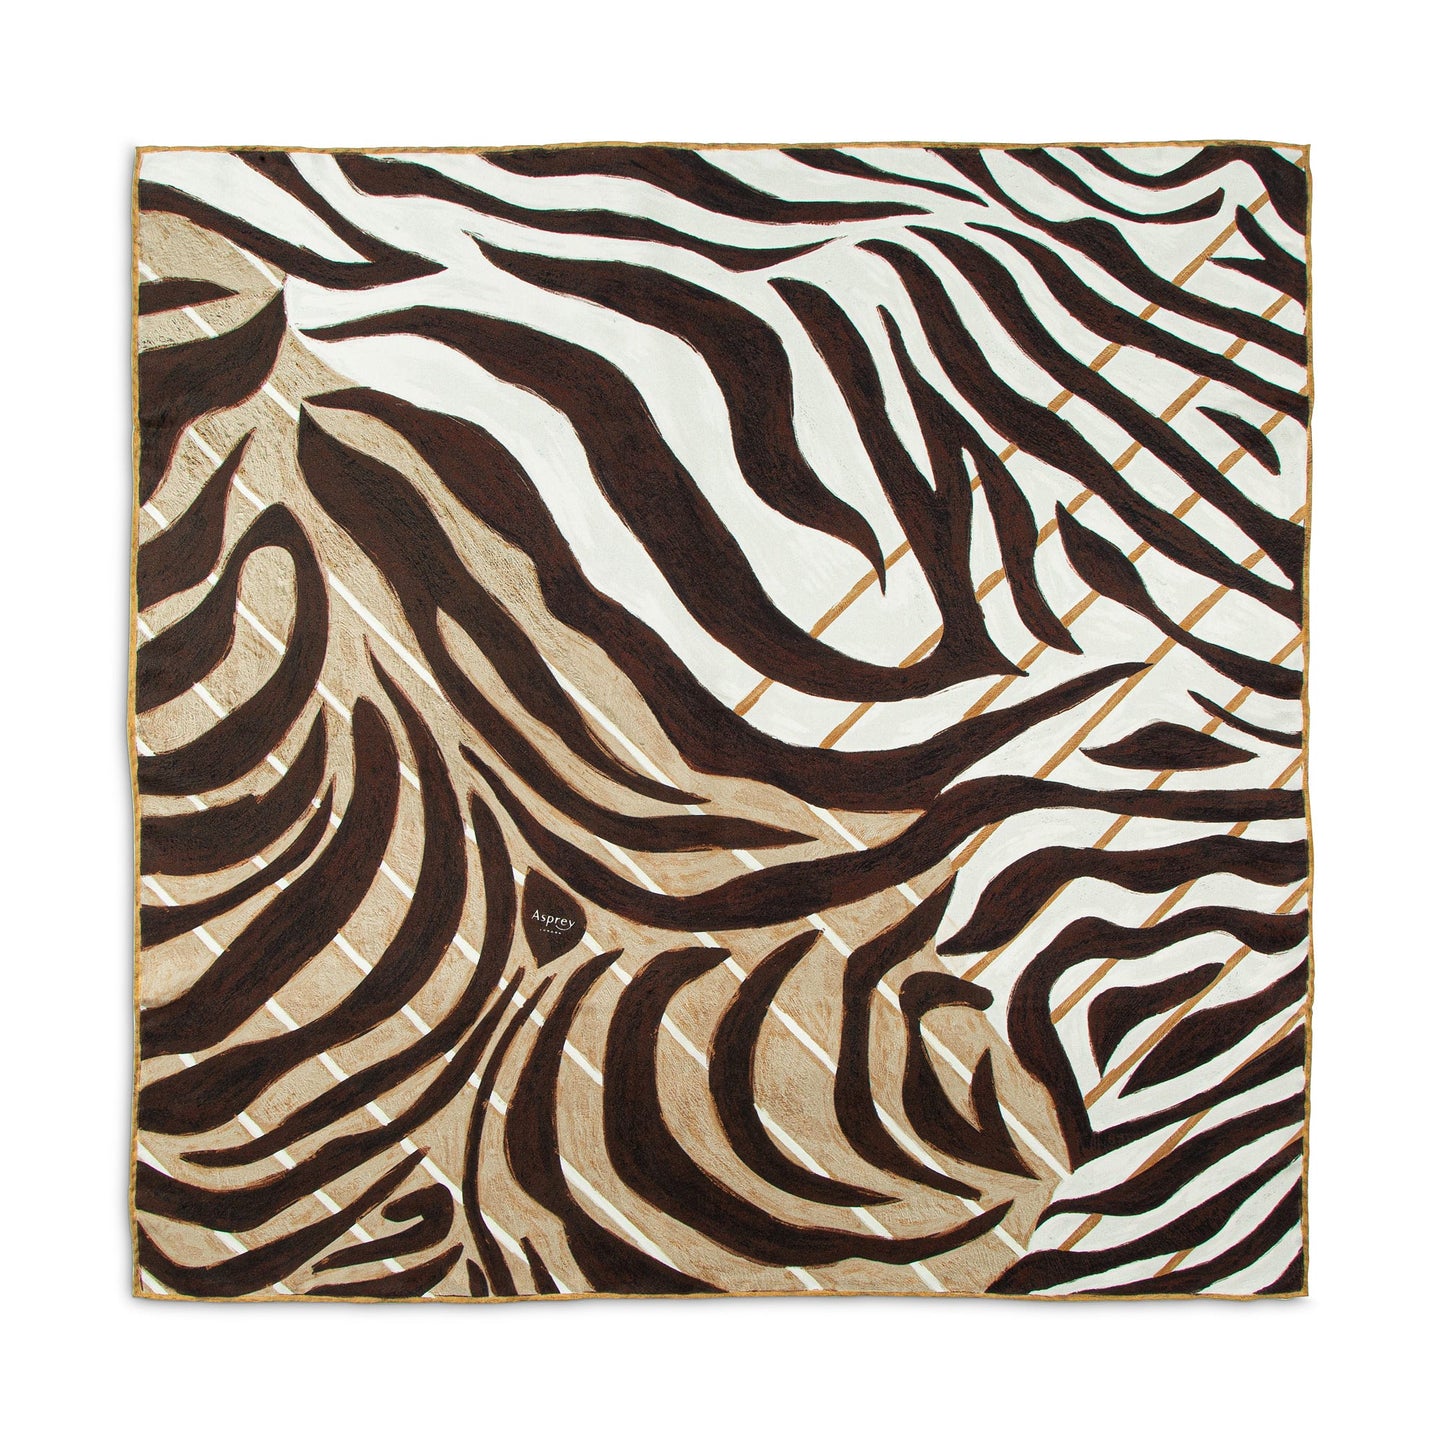 Zebra Silk Scarf